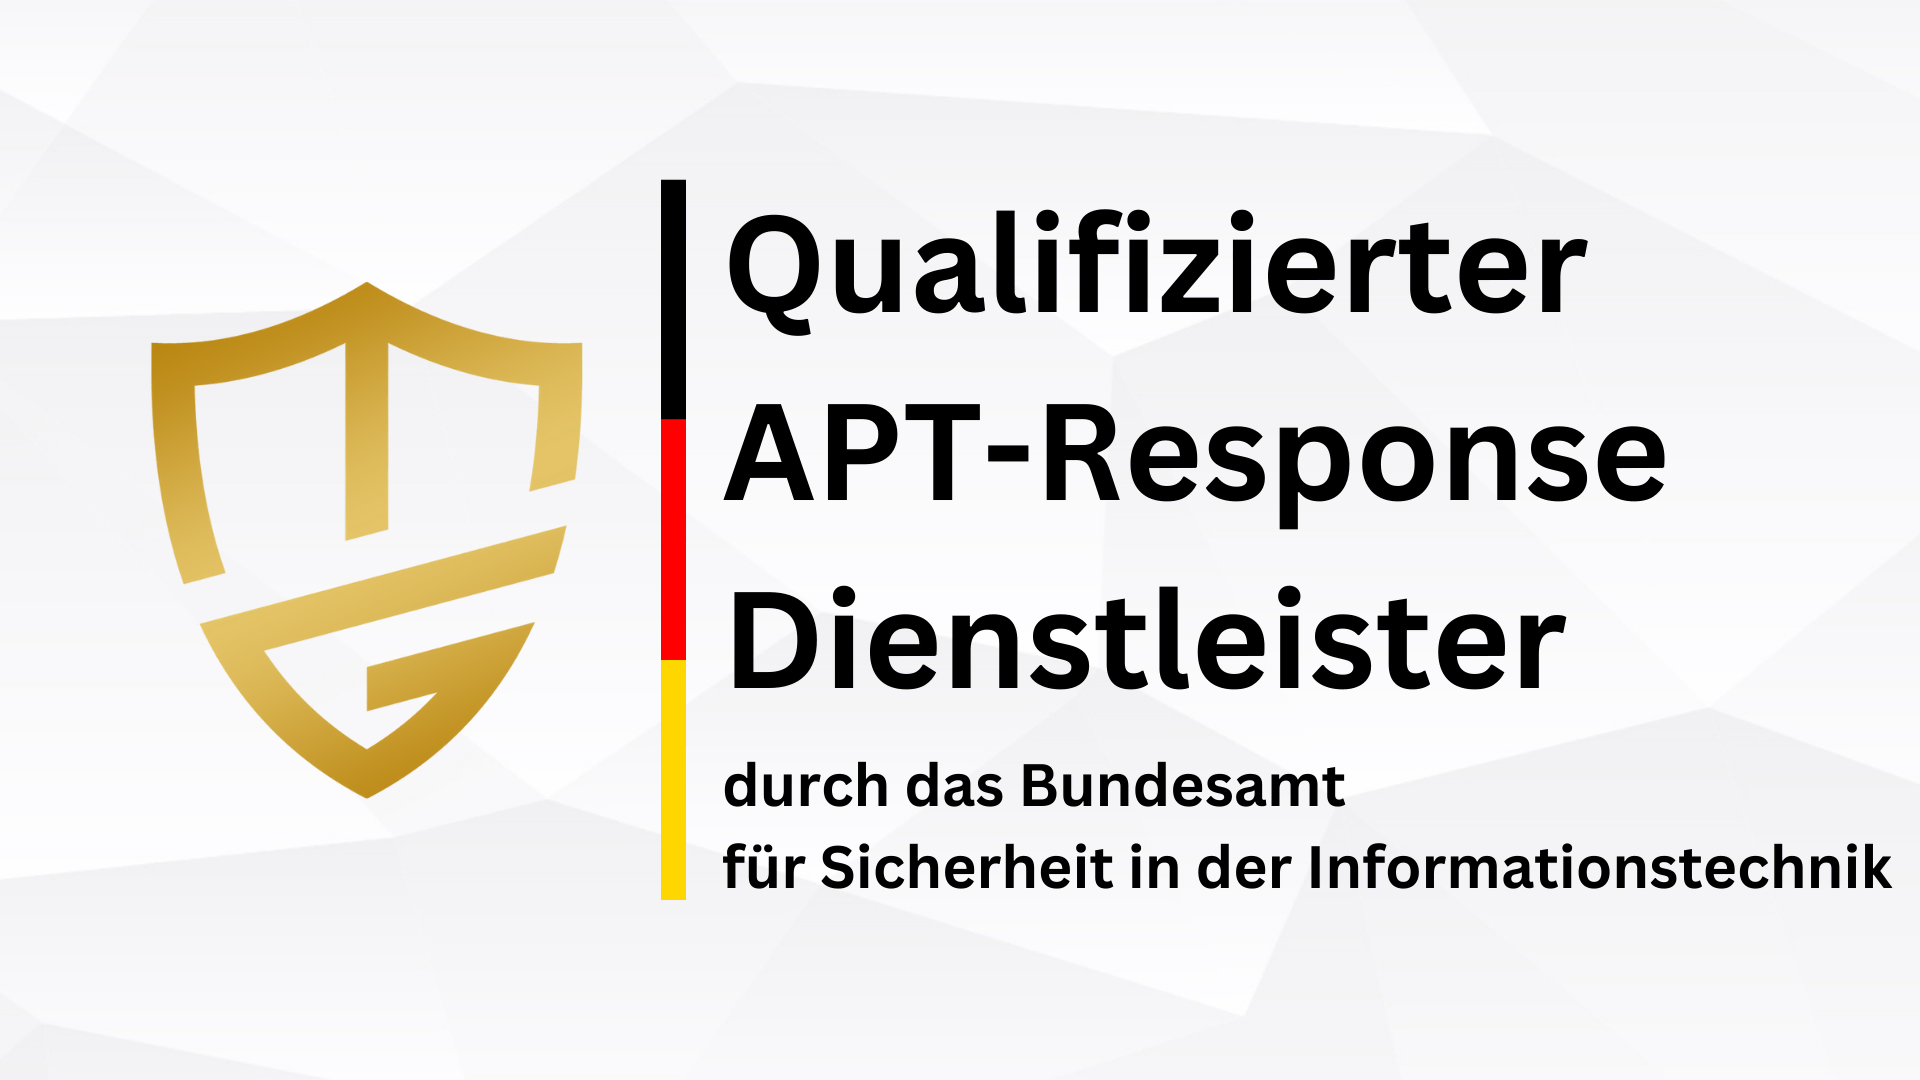 Die Dr. Michael Gorski Consulting GmbH ist jetzt BSI-qualifizierter APT-Response Dienstleister!